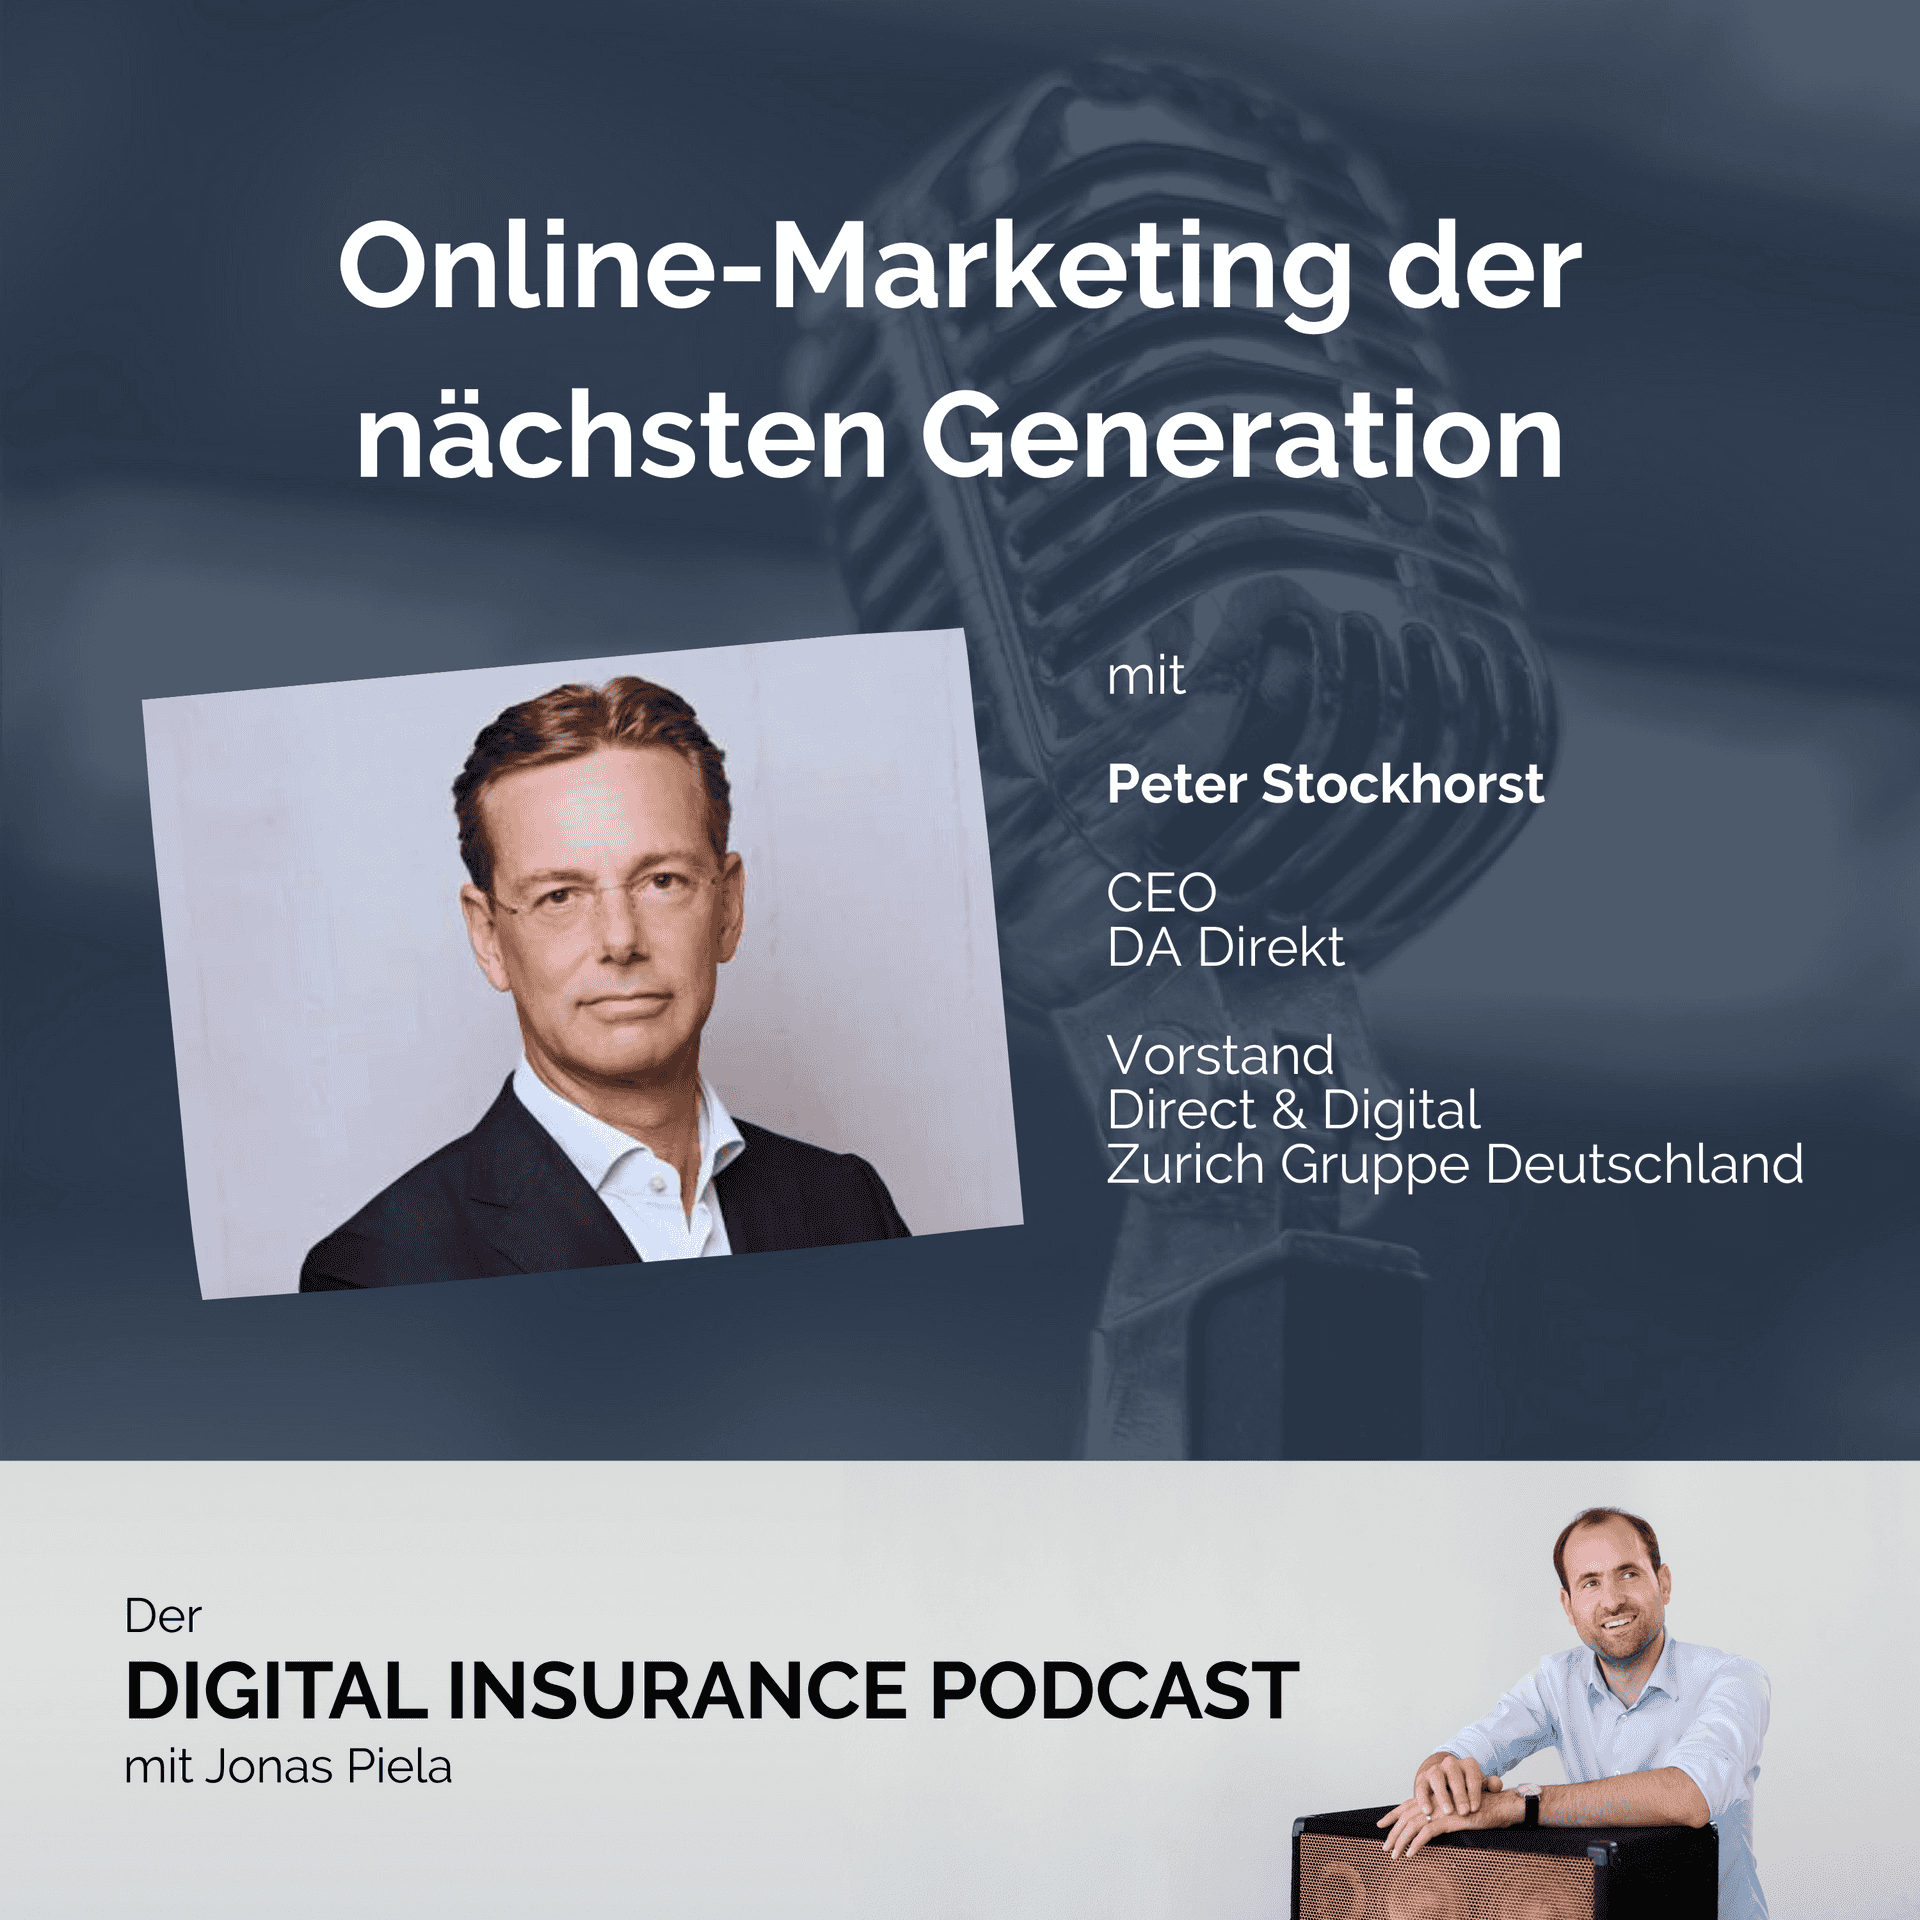 Online-Marketing der nächsten Generation mit Peter Stockhorst